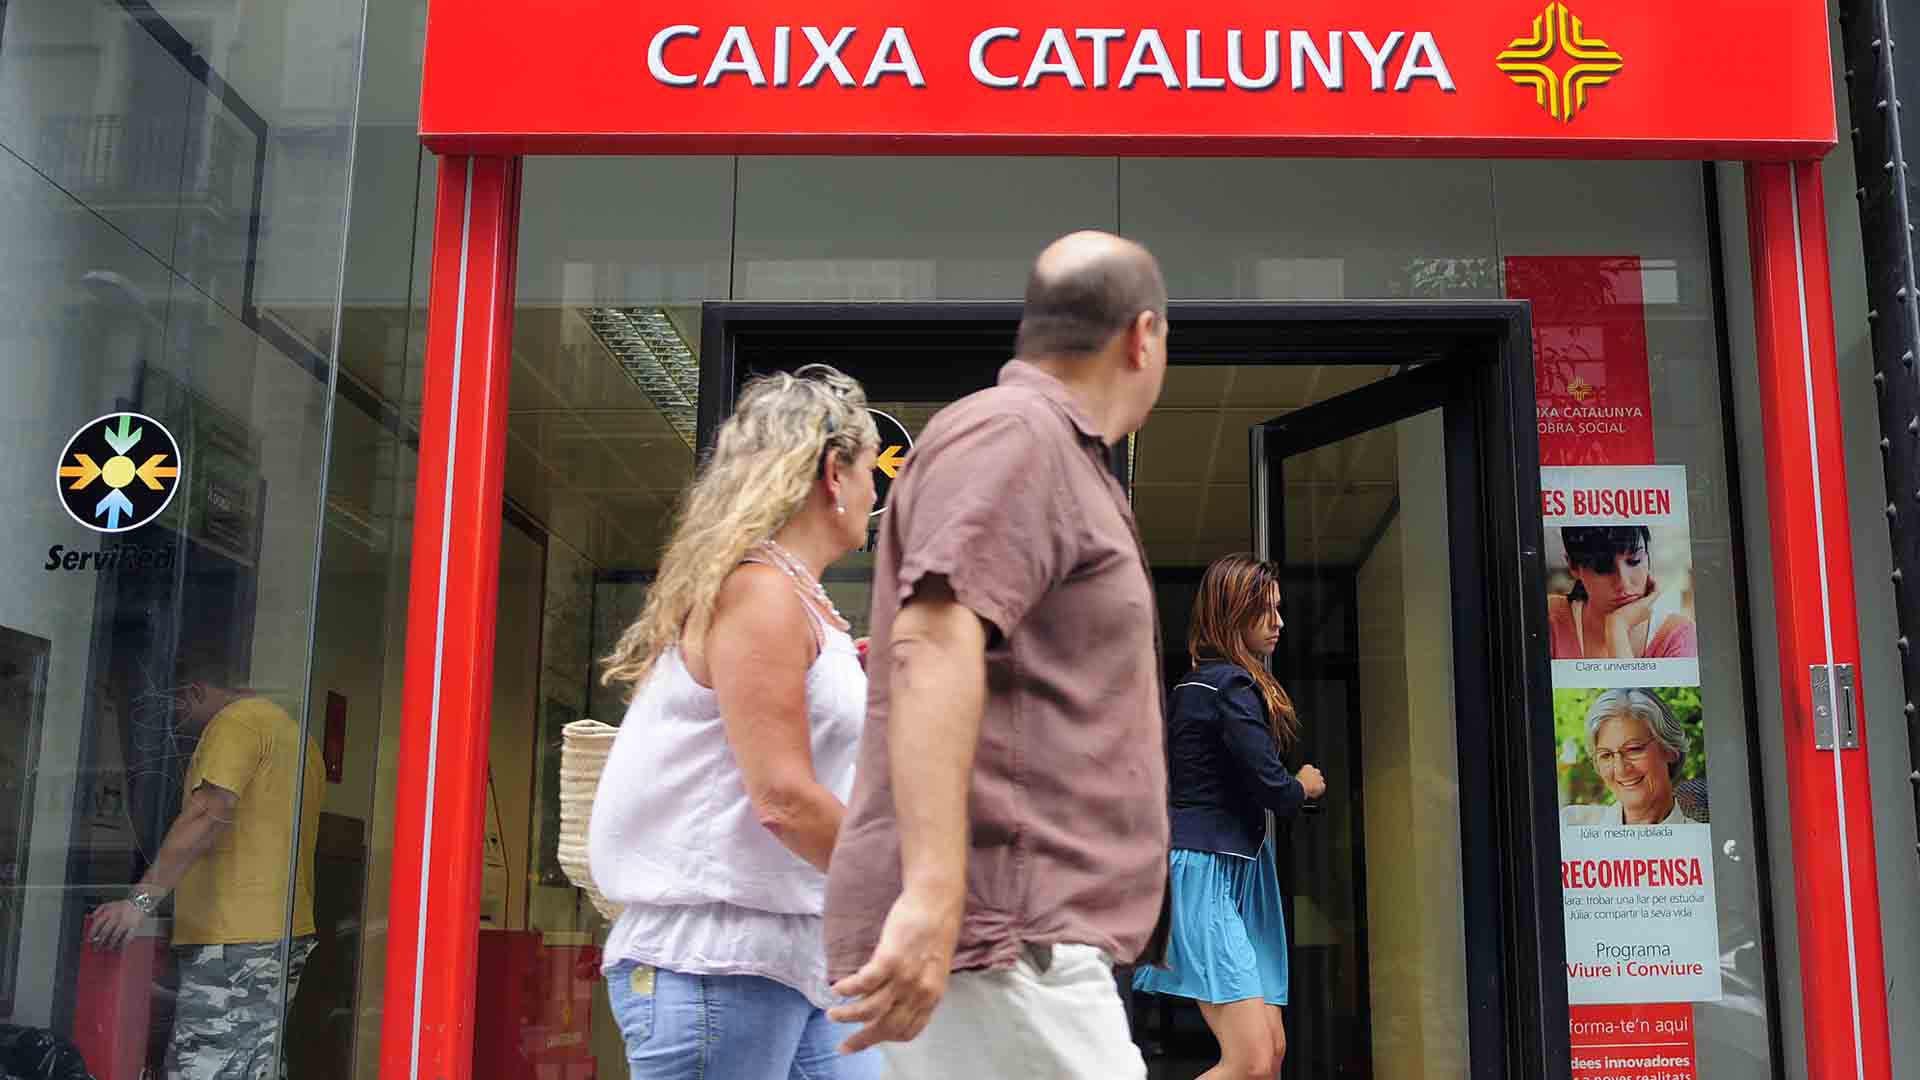 Absuelta la cúpula de Caixa Catalunya por el caso de los sobresueldos